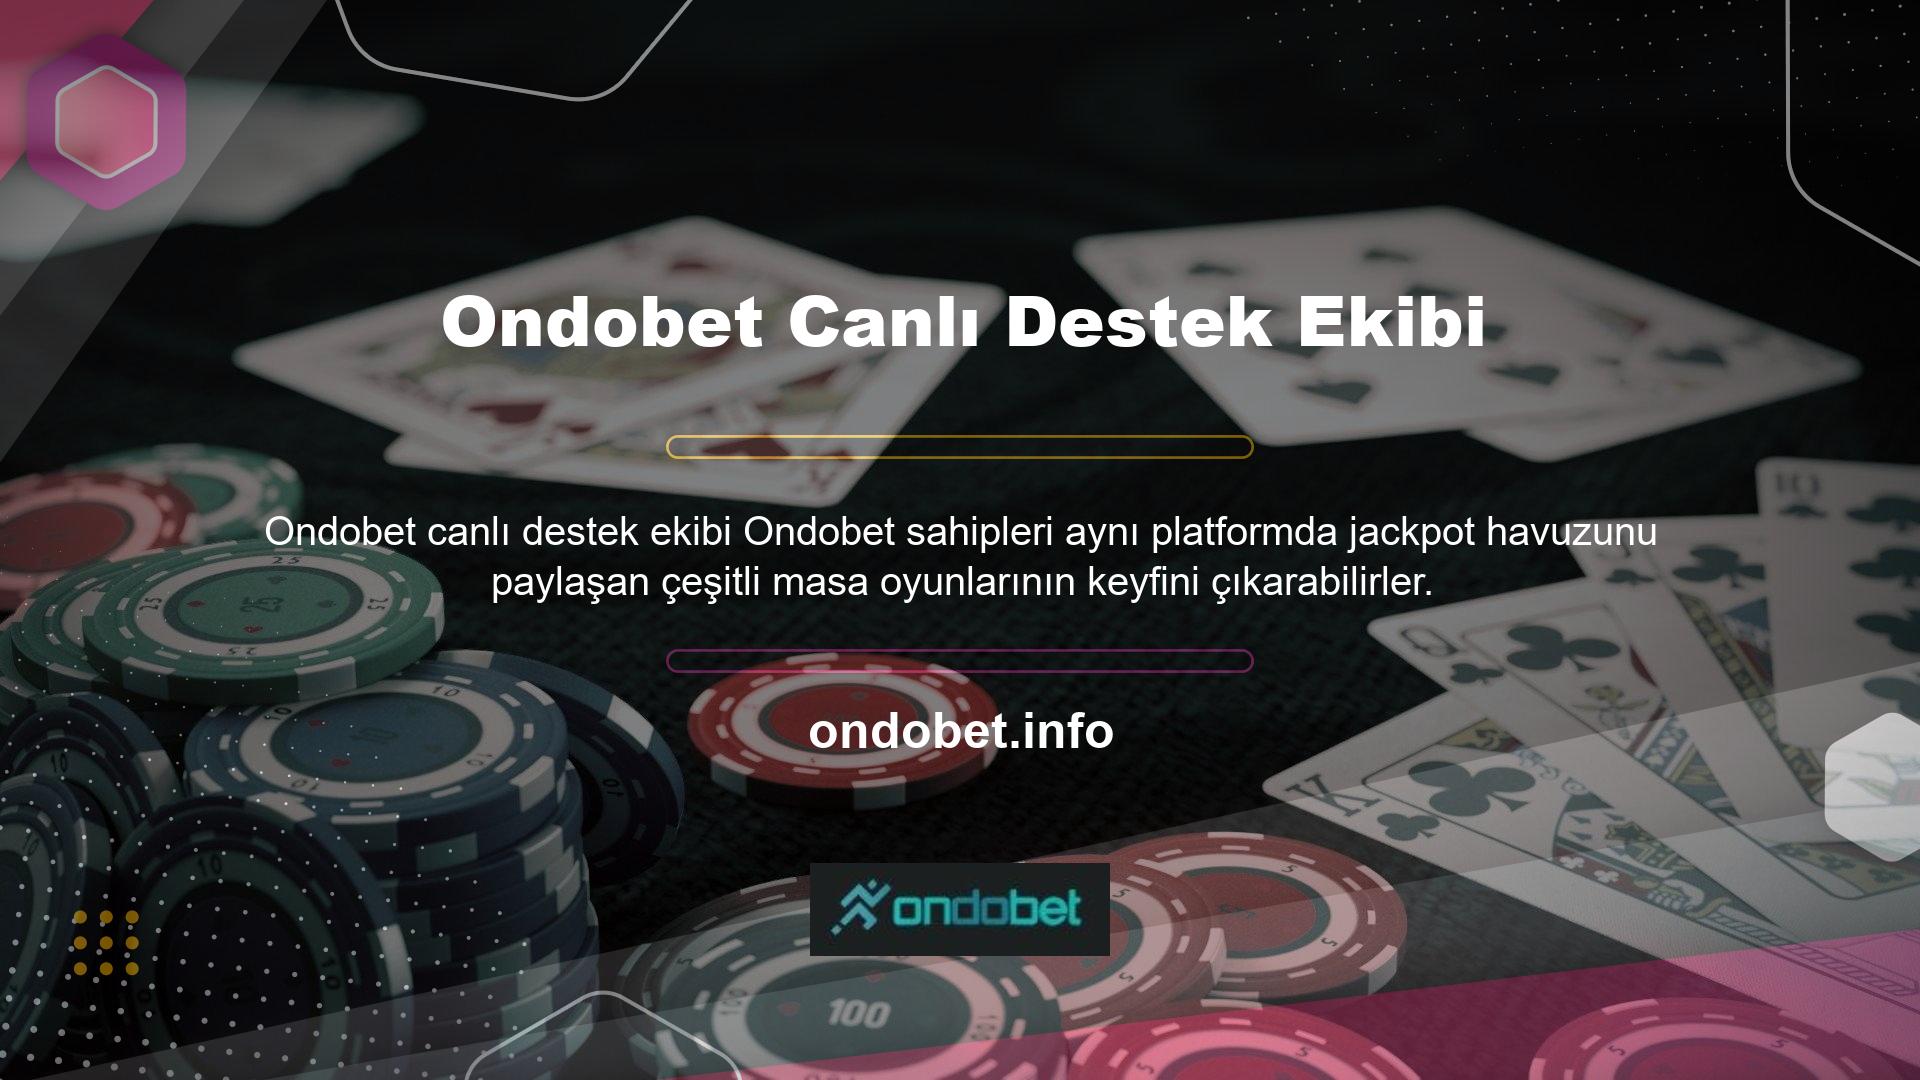 Ondobet iki tür casino oyunu sunmaktadır: otomatik olarak oynananlar ve gerçek zamanlı olarak oynananlar